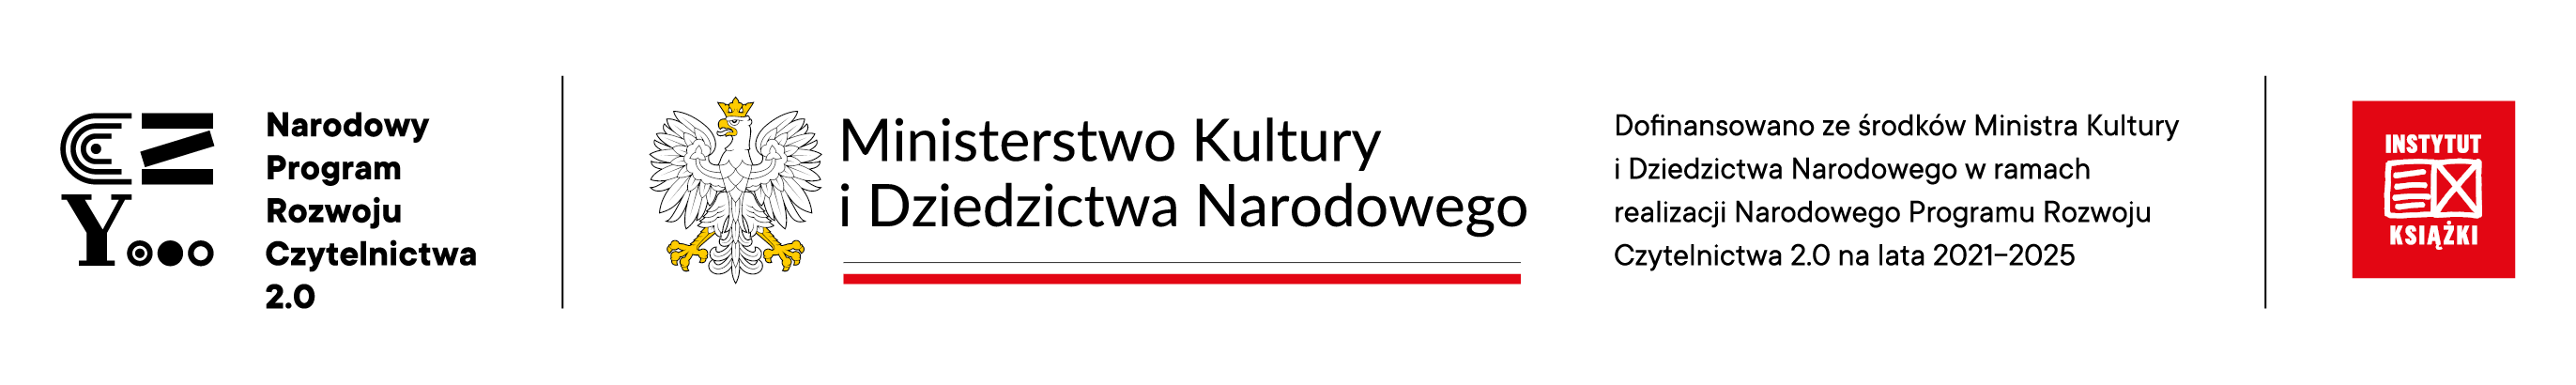 belka logotypowa narodowego programu rozwoju czytelnictwa 2.0, ministerstwa kultury i dziedzictwa narodowego i instytutu książki